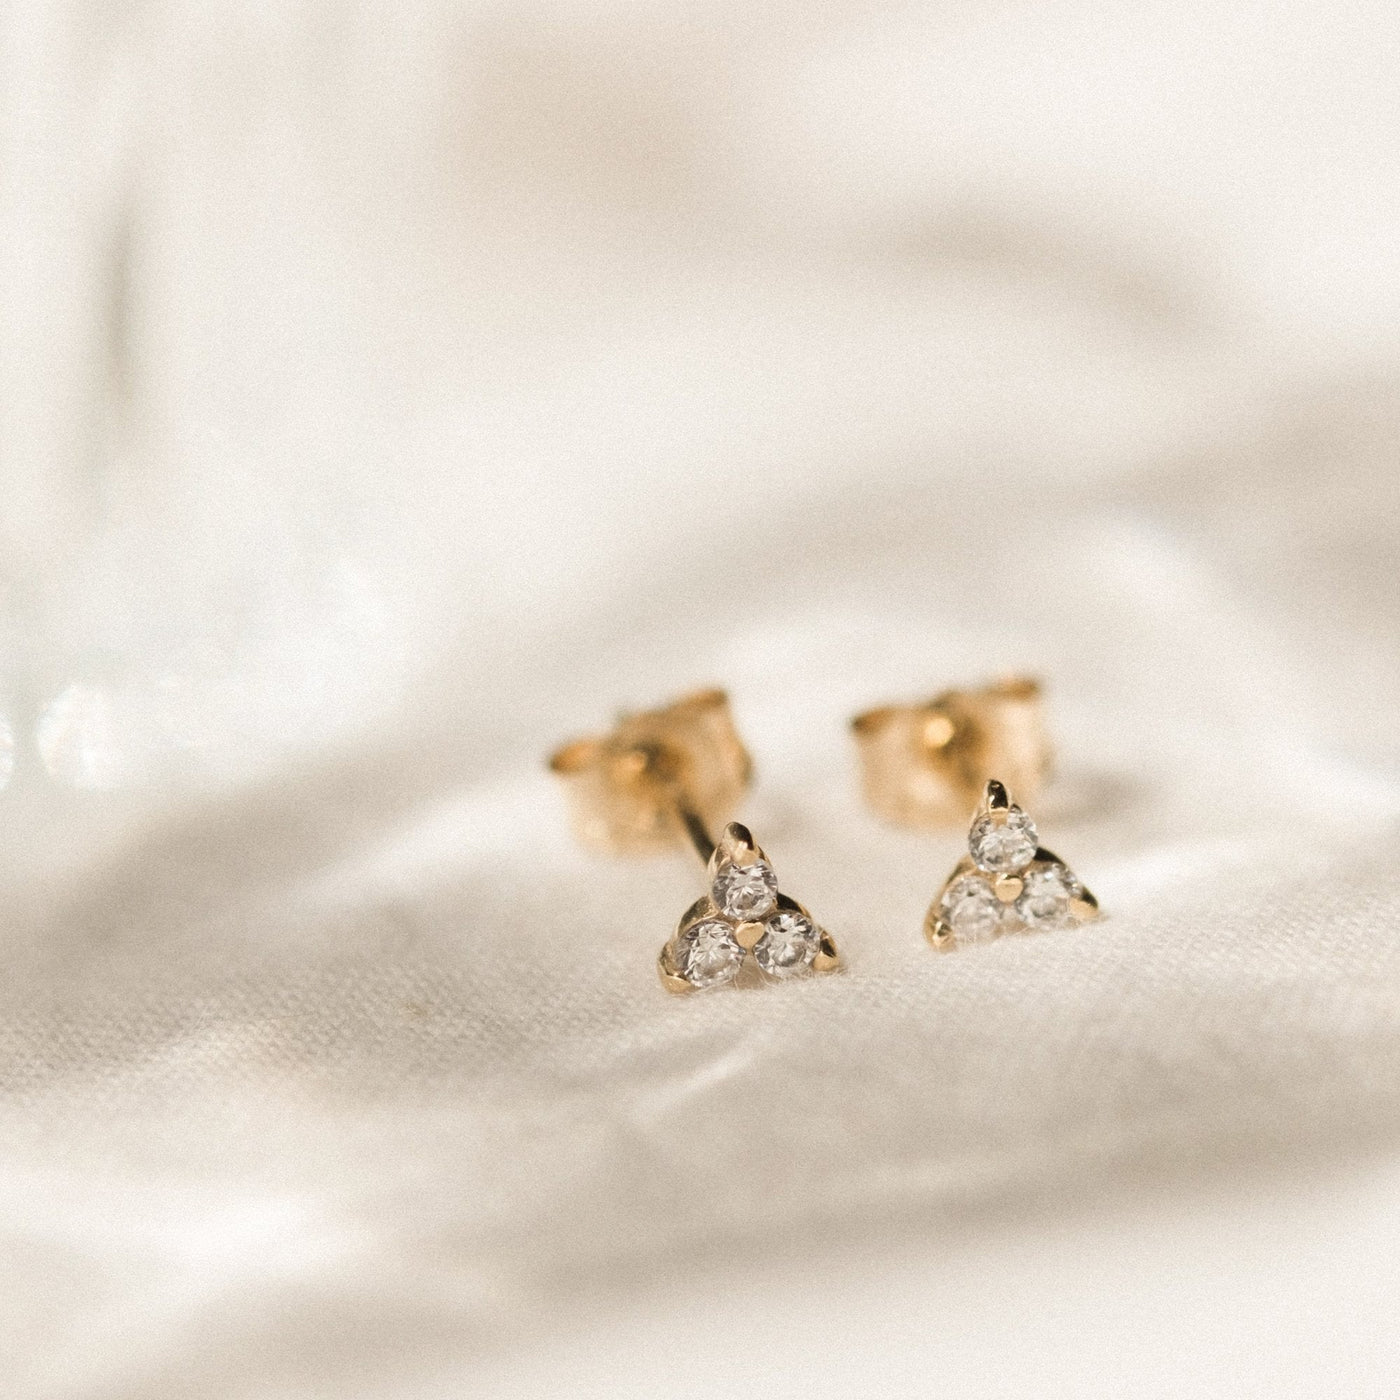 Triple Diamond Stud Earrings by Simple & Dainty Jewelry